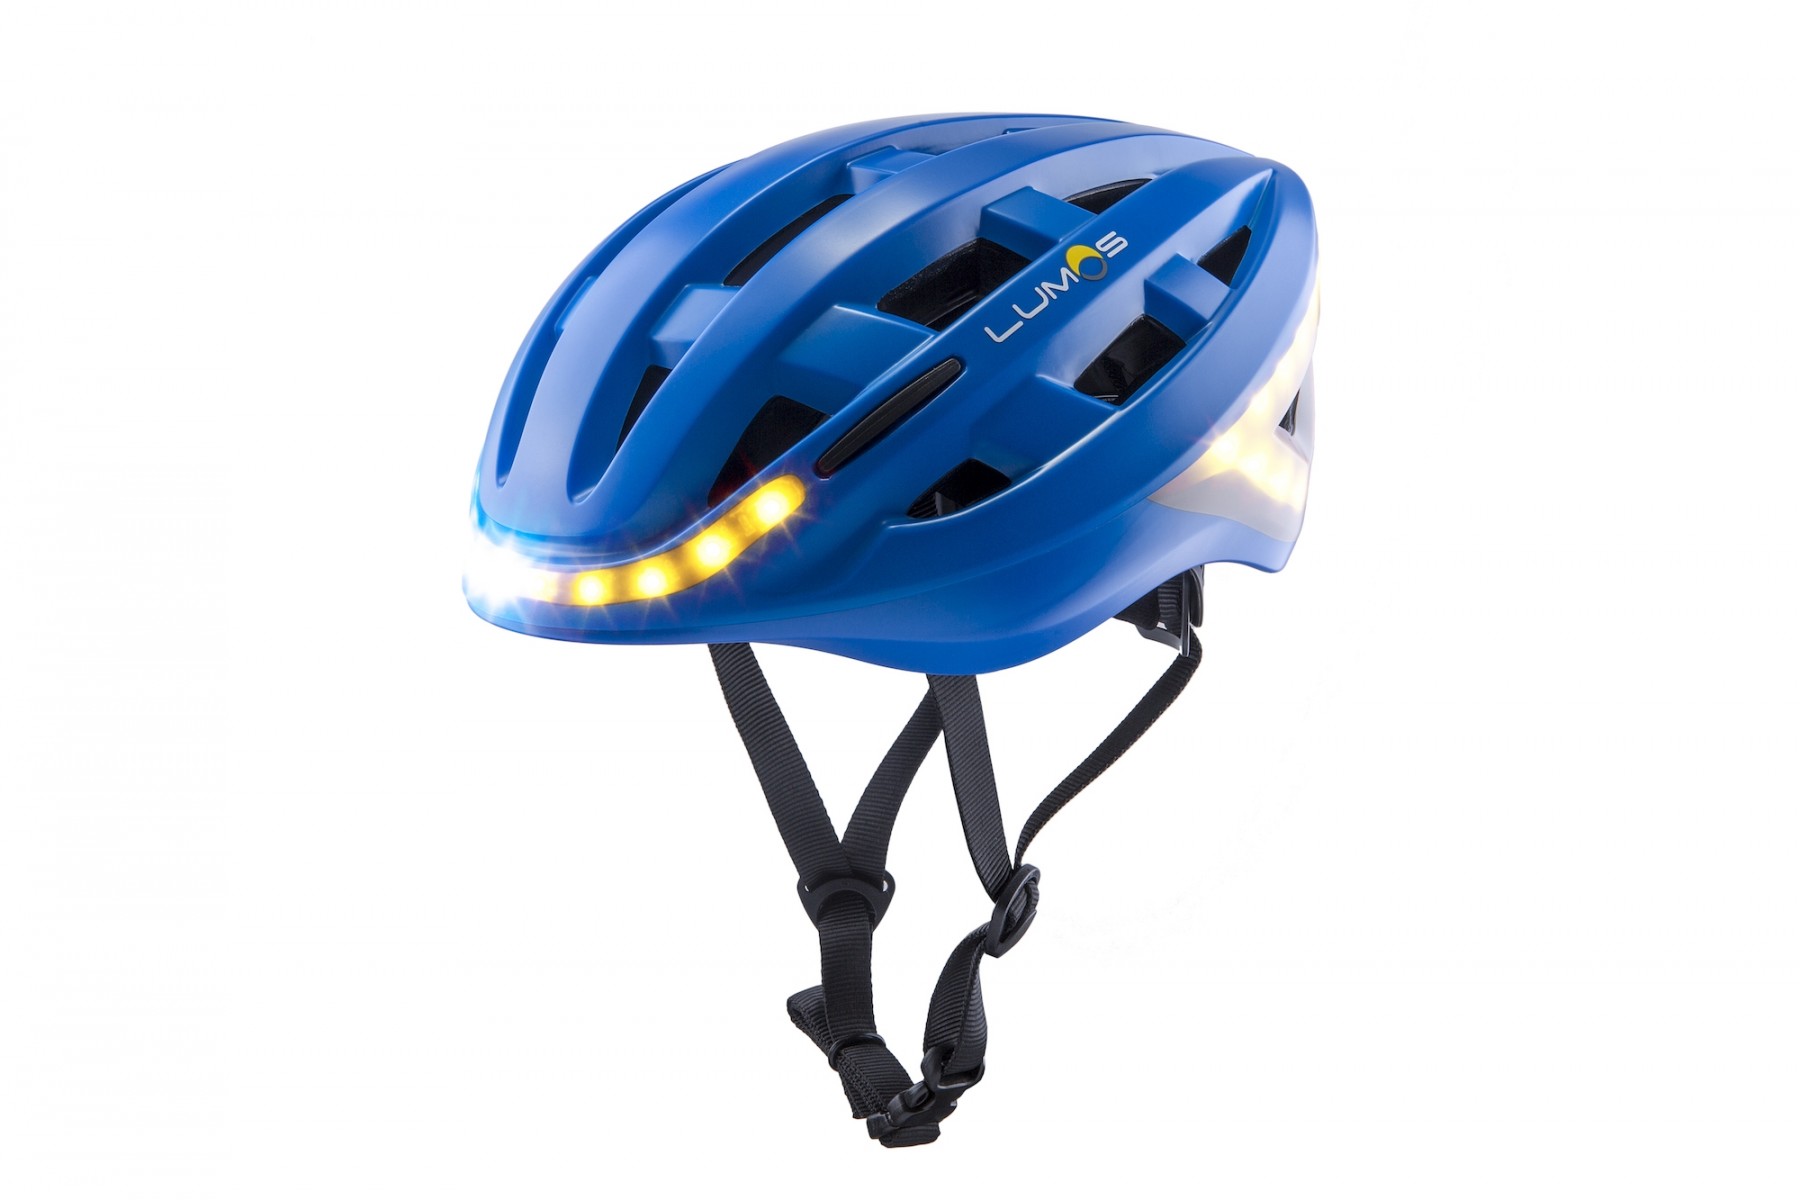 Motorrad Fahrradhelm Led Kaltlicht Streifen El Aufkleber Wasserdicht 4  Blinkende Warnlichter Nacht Reiten Helm Kit (blau)